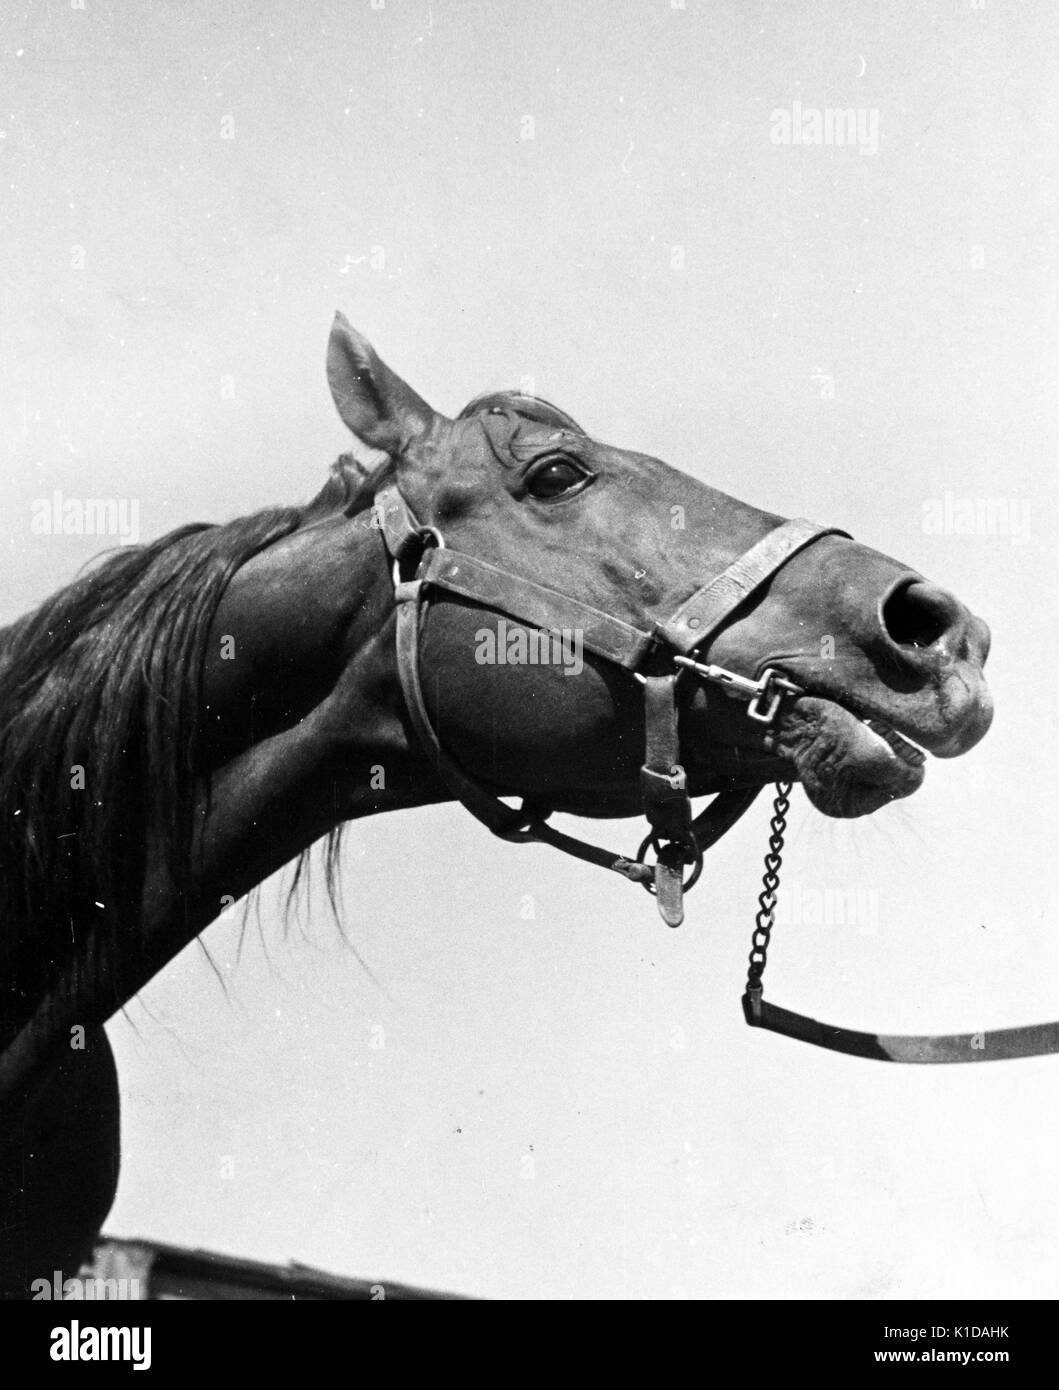 Niedriger Winkel, Nahaufnahme des Kopfes eines Pferdes, mit Zügeln, die aus dem Rahmen führen, Maryland, 1935. Aus der New York Public Library. Stockfoto